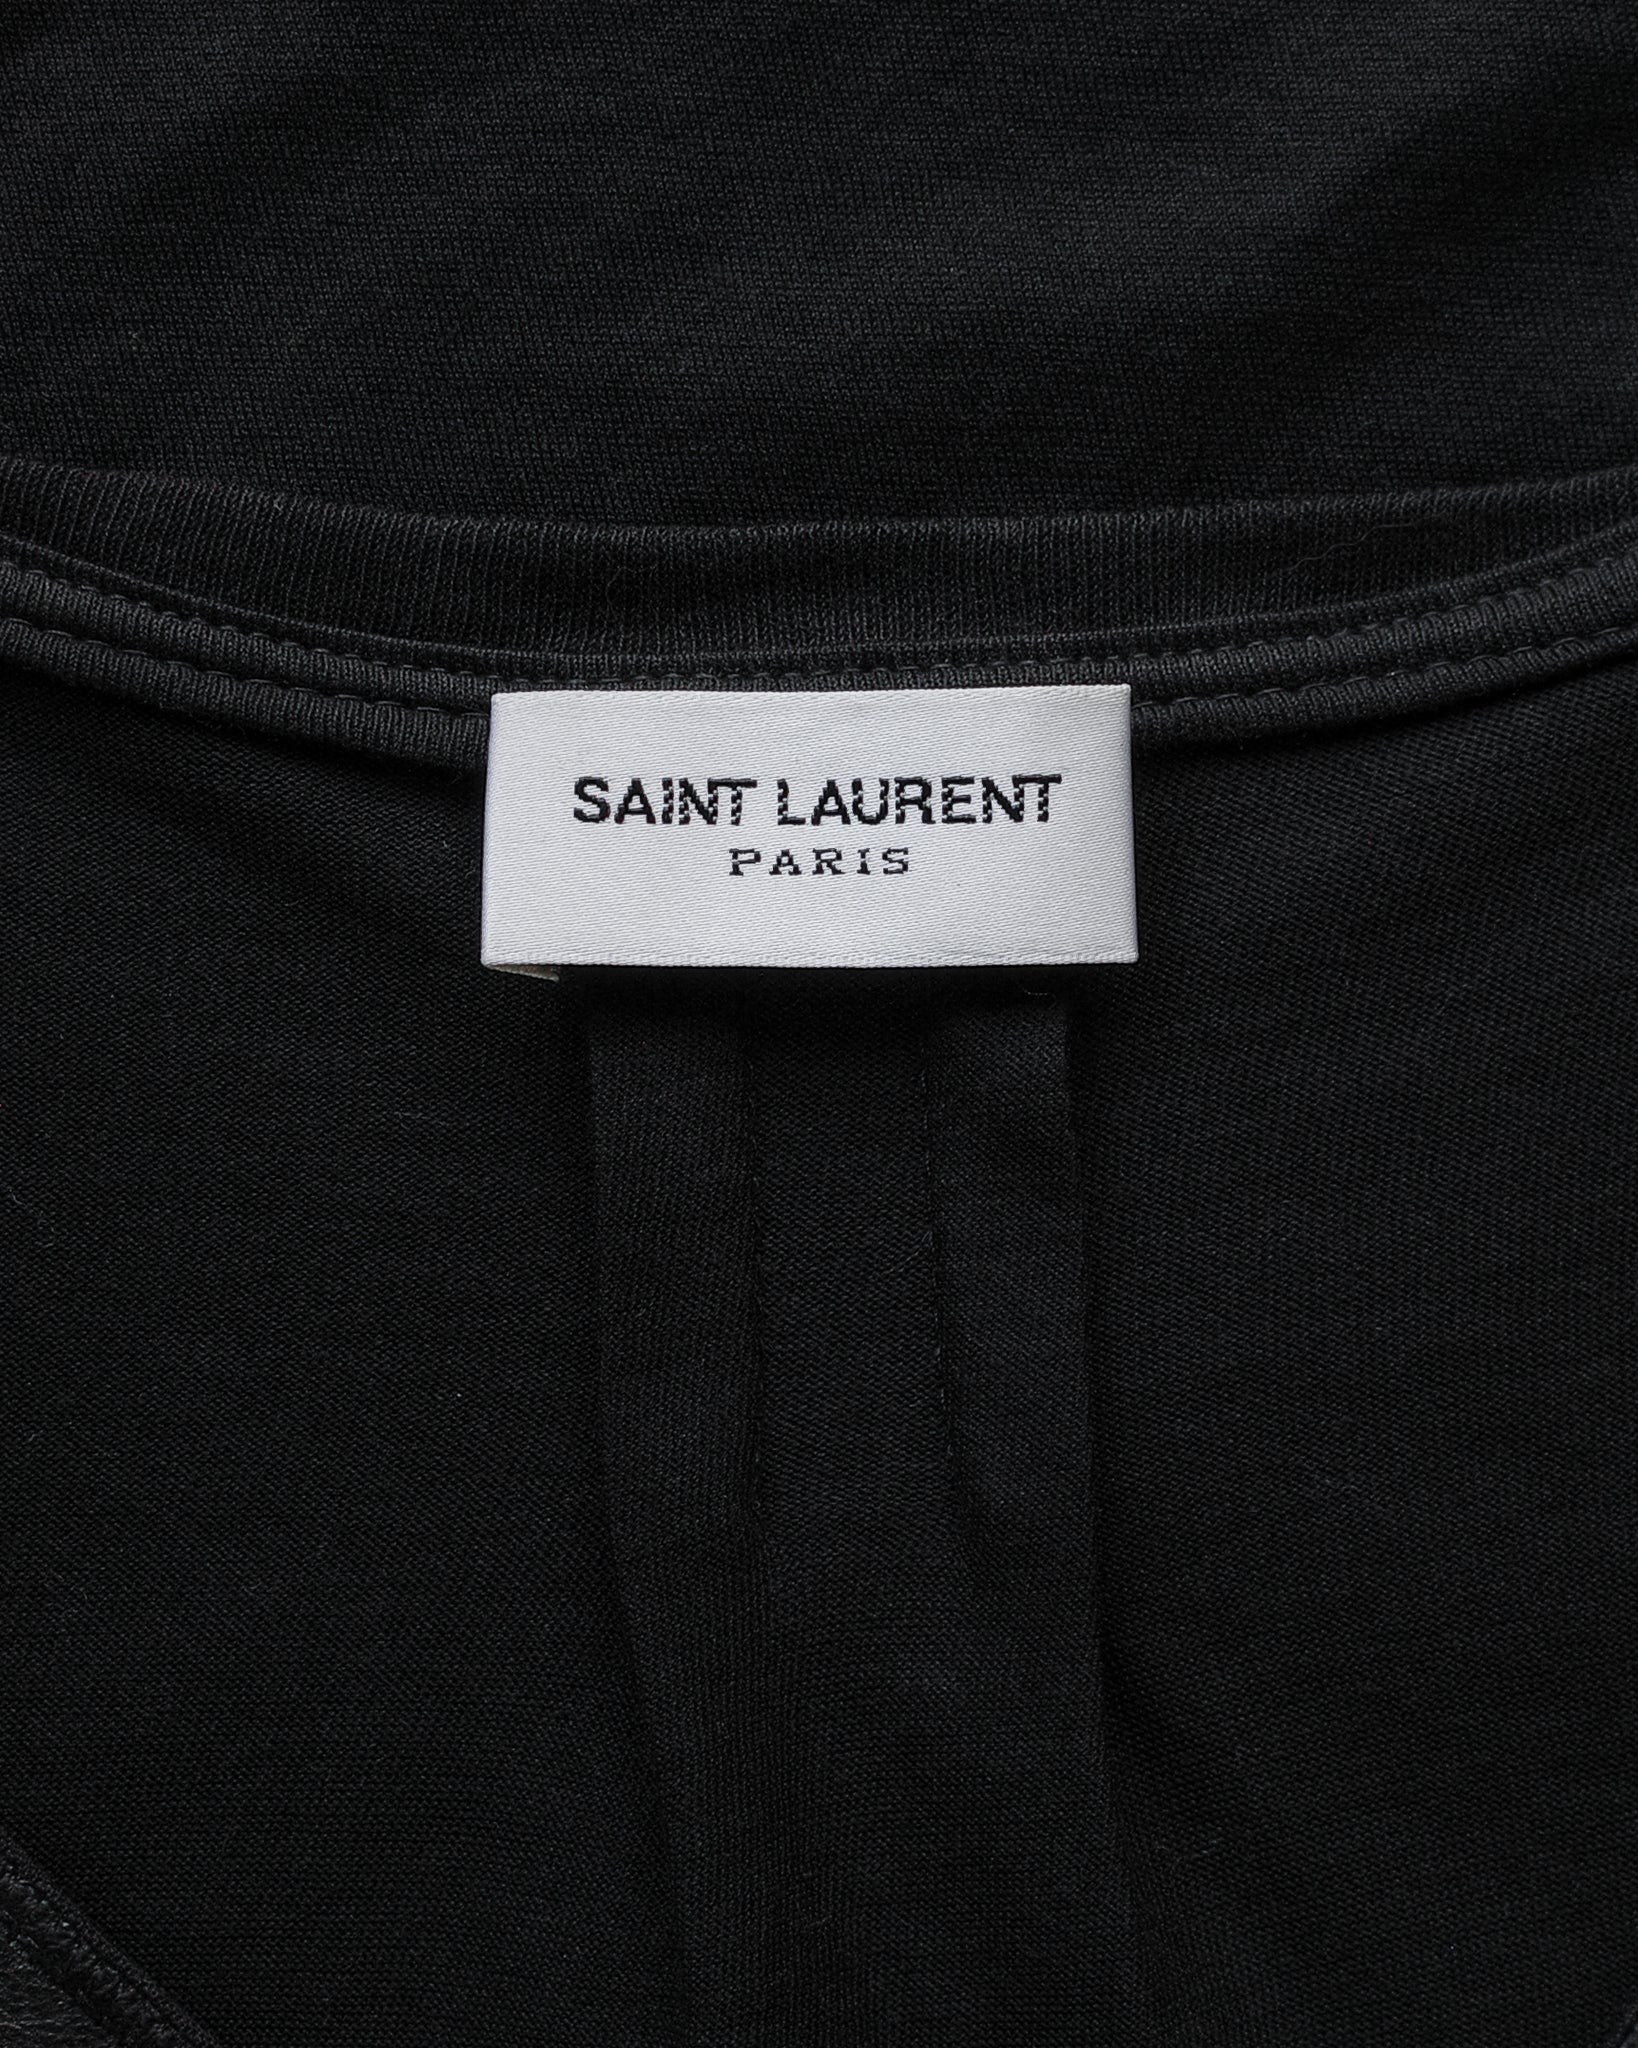 Saint Laurent Paris SS15 Concho Shirt